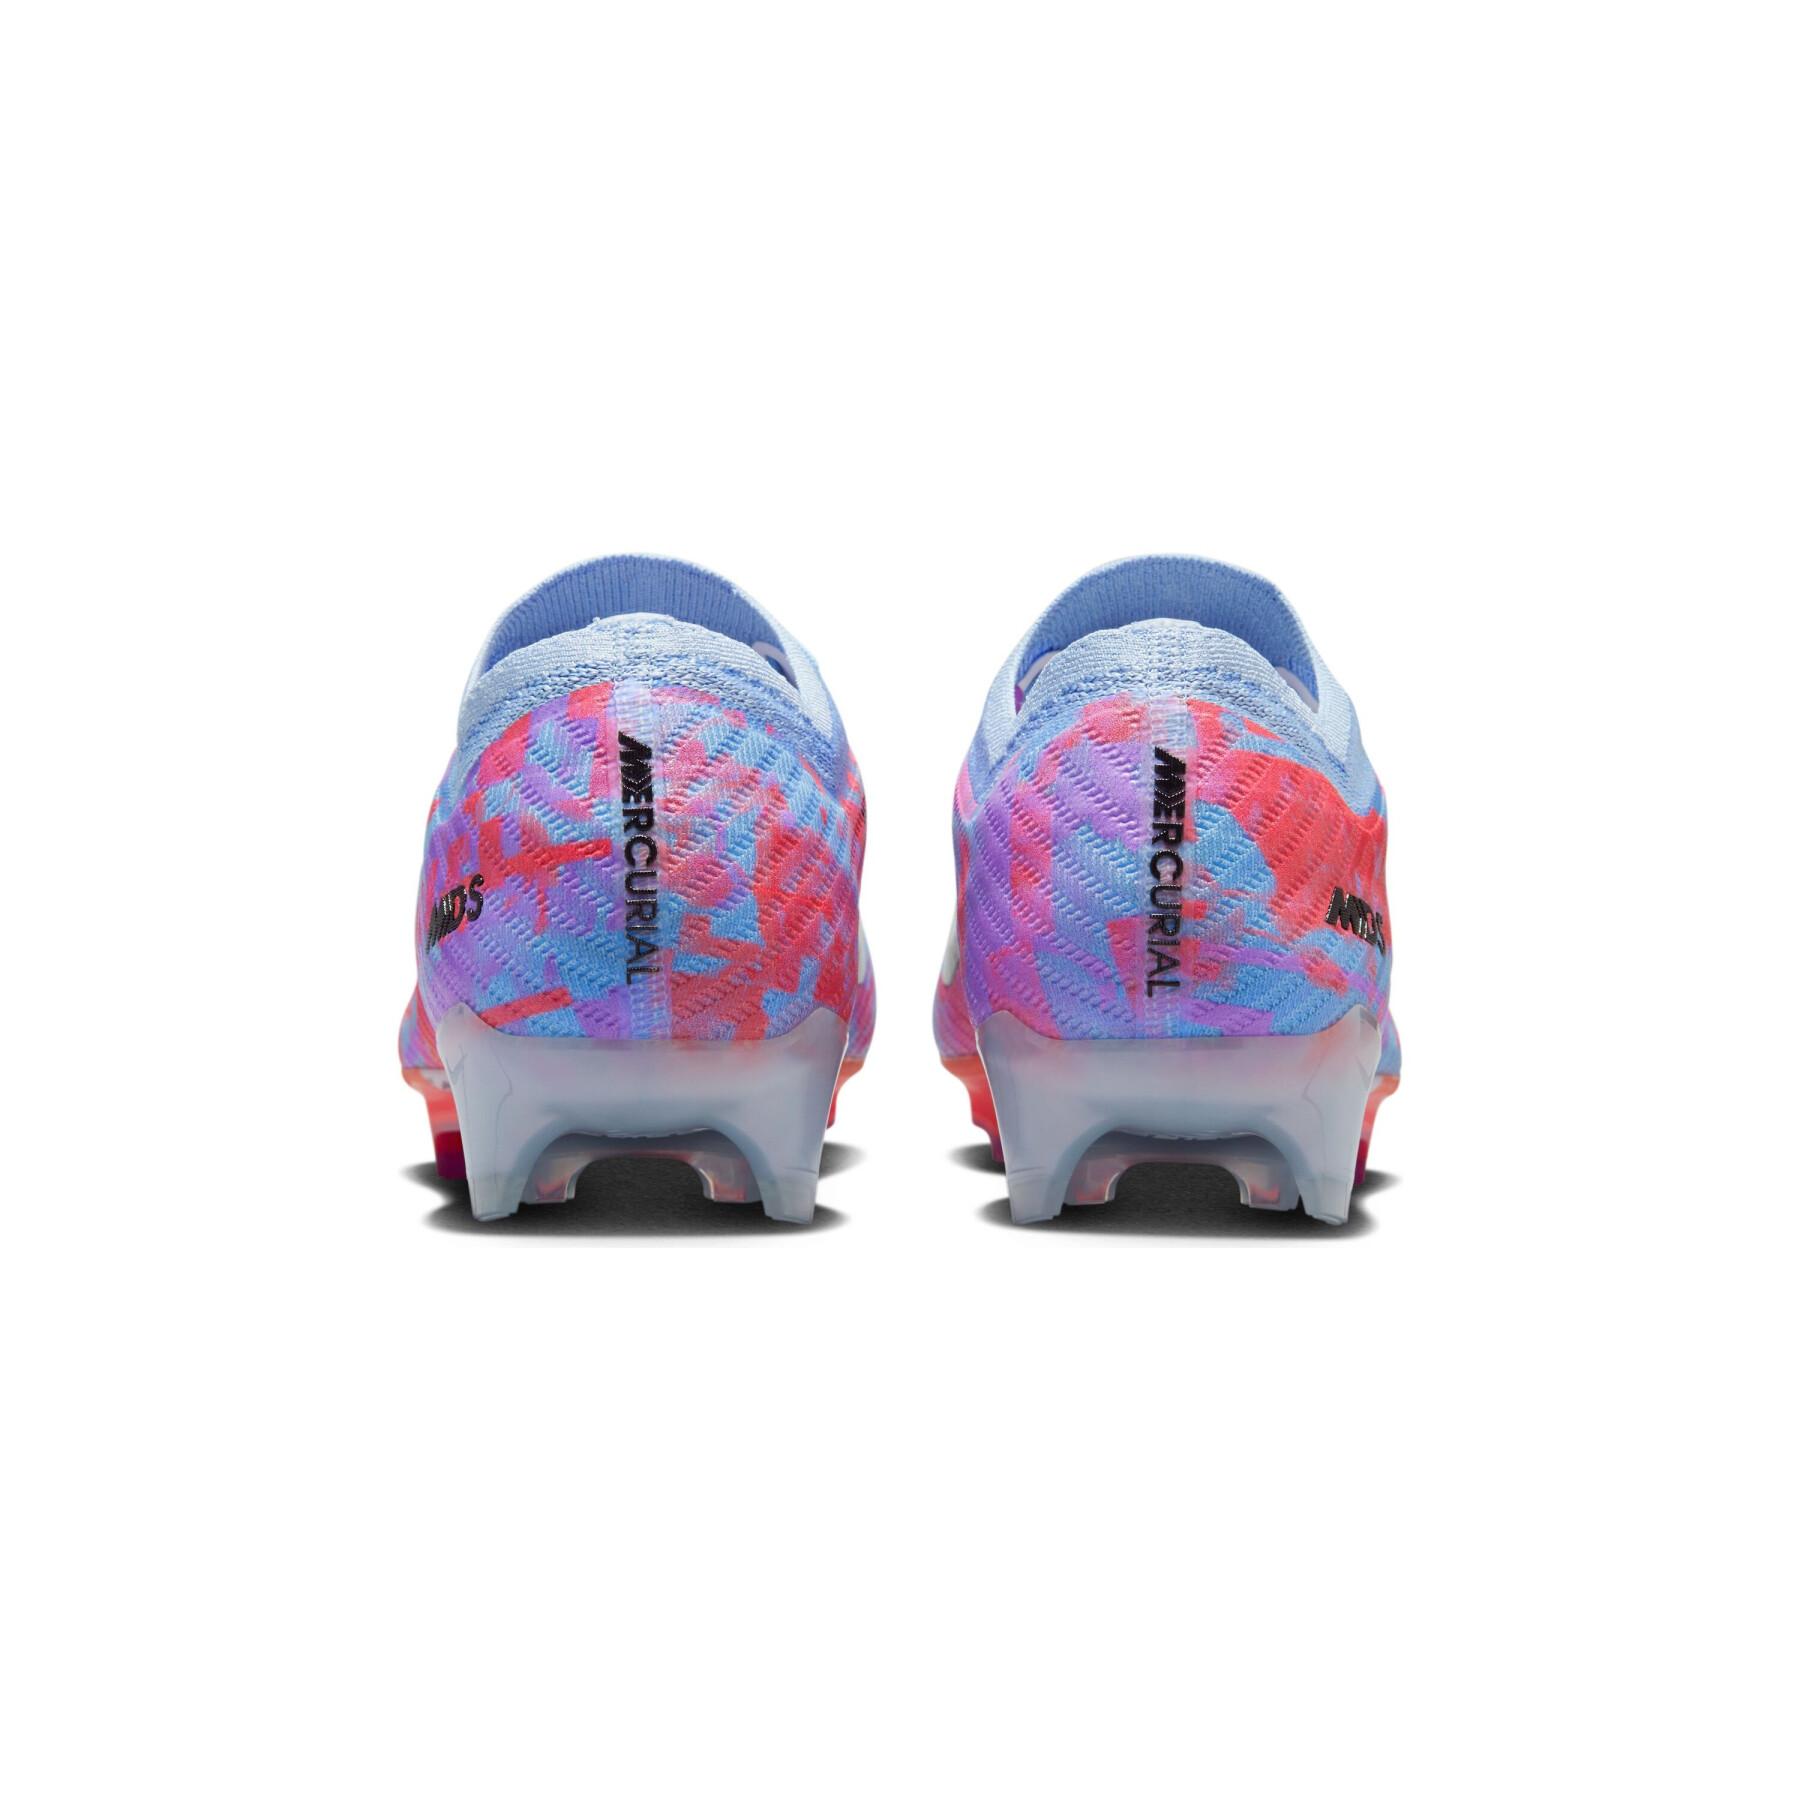 Botas de fútbol Nike Mercurial Vapor 15 Elite FG - MDS pack